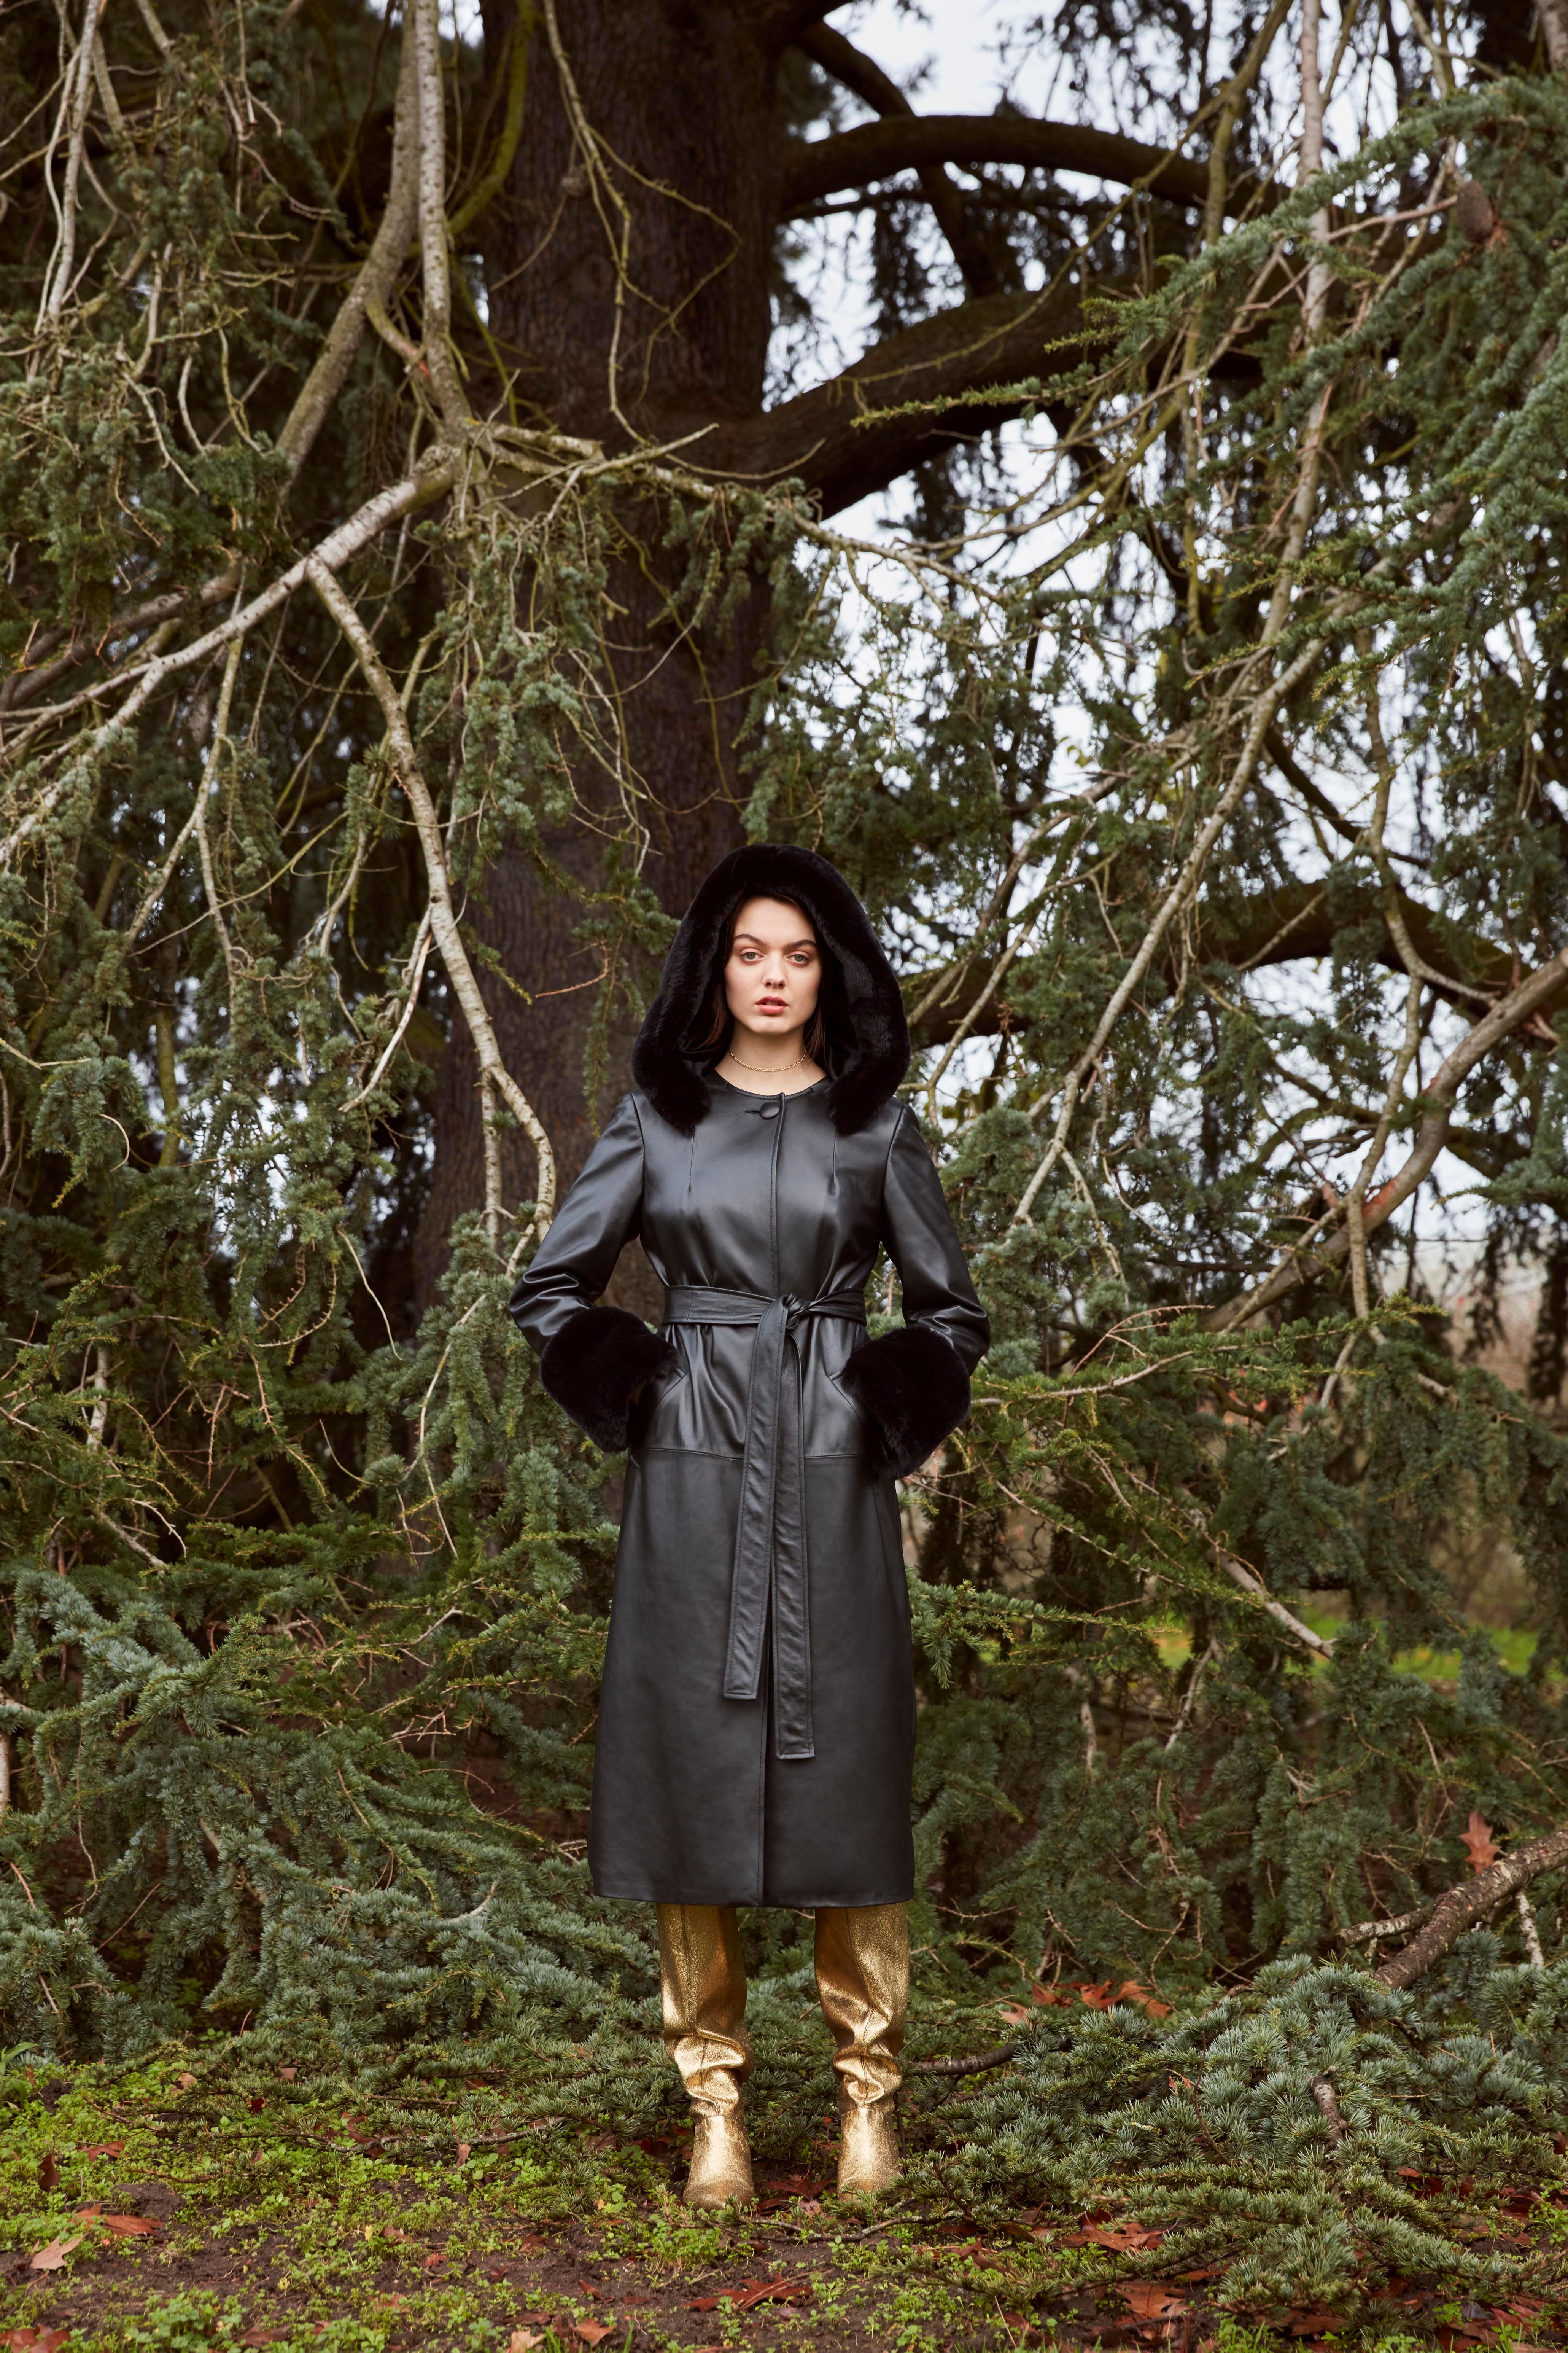 Women's Verheyen London Hooded Leather Trench Coat in Black with Faux Fur - Size uk 12 